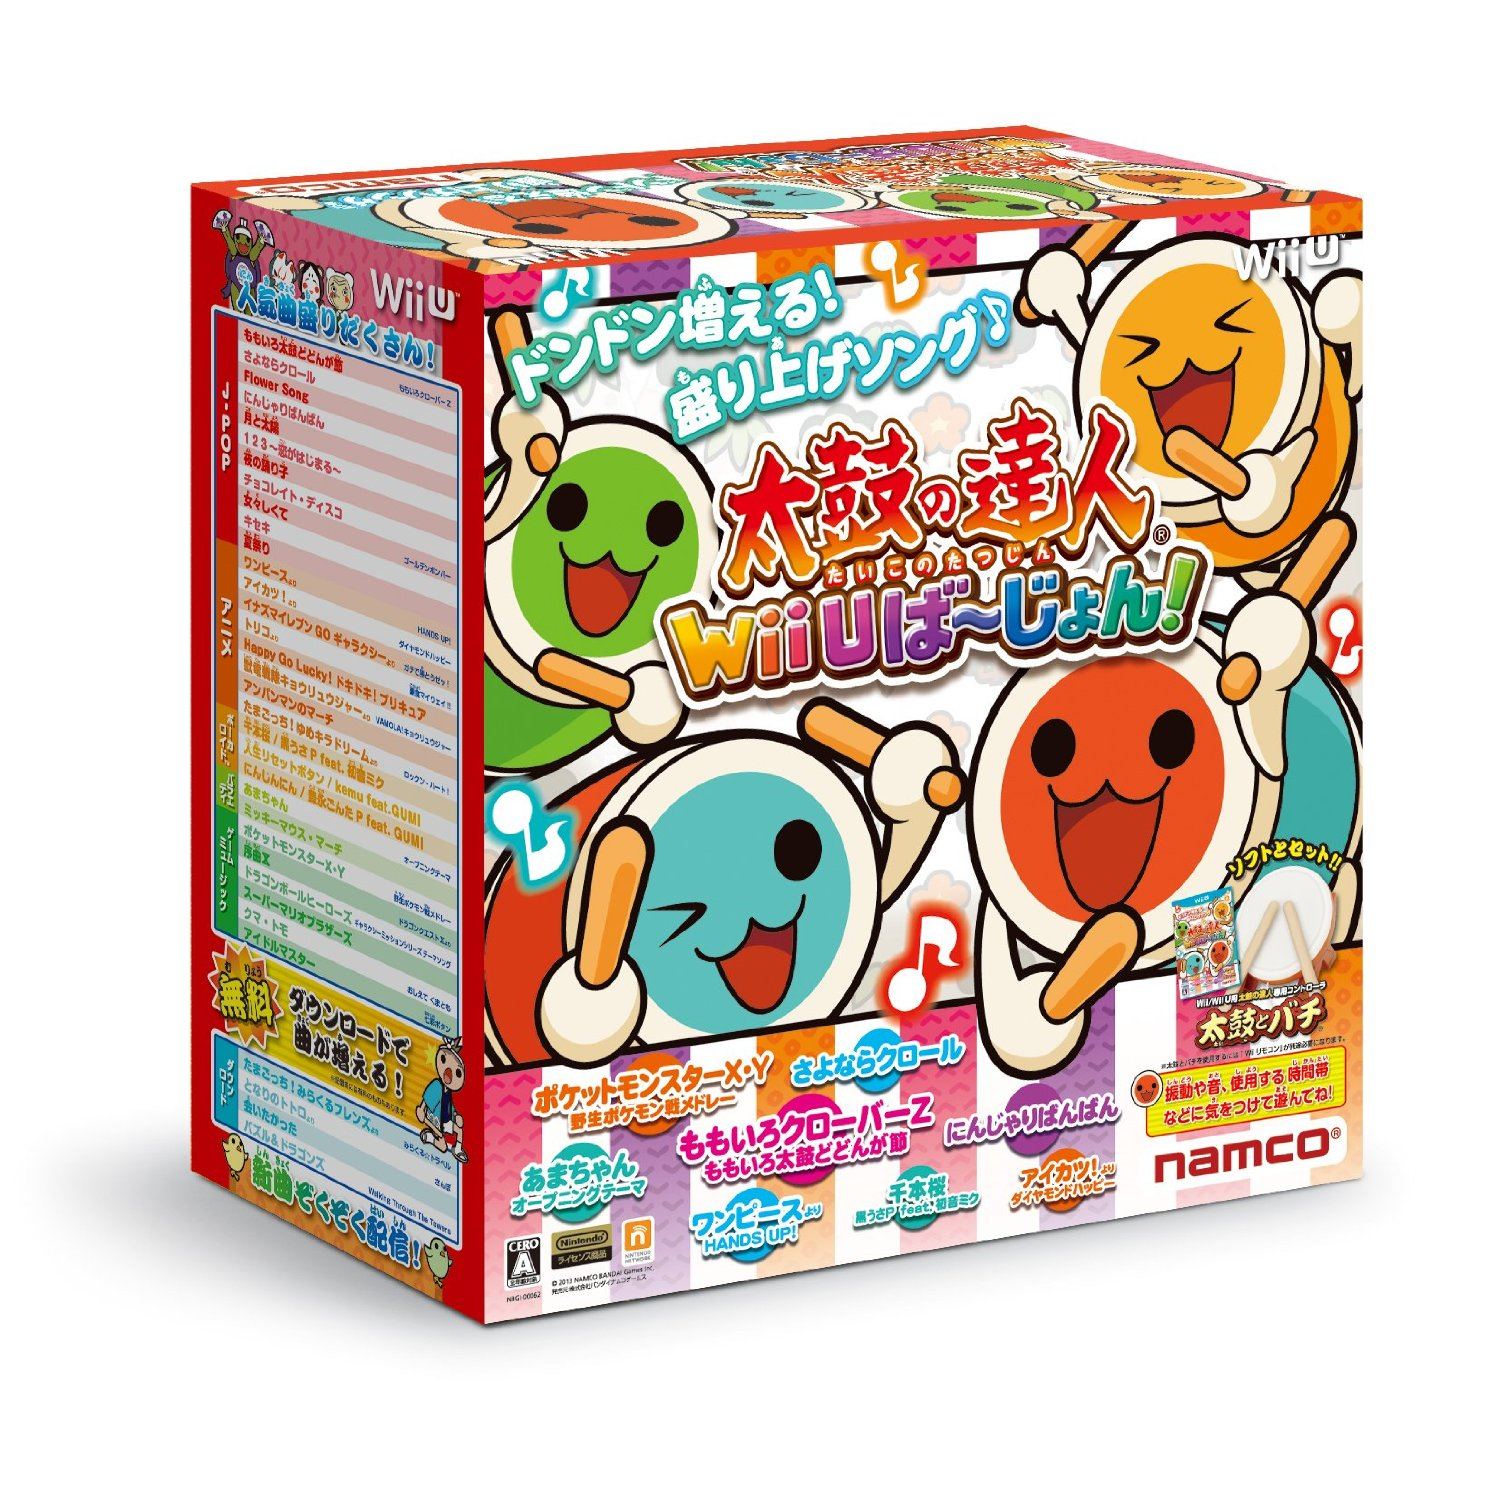 Taiko no Tatsujin: Wii U Version [Bundle Set with Taiko & Bachi] (Japan)